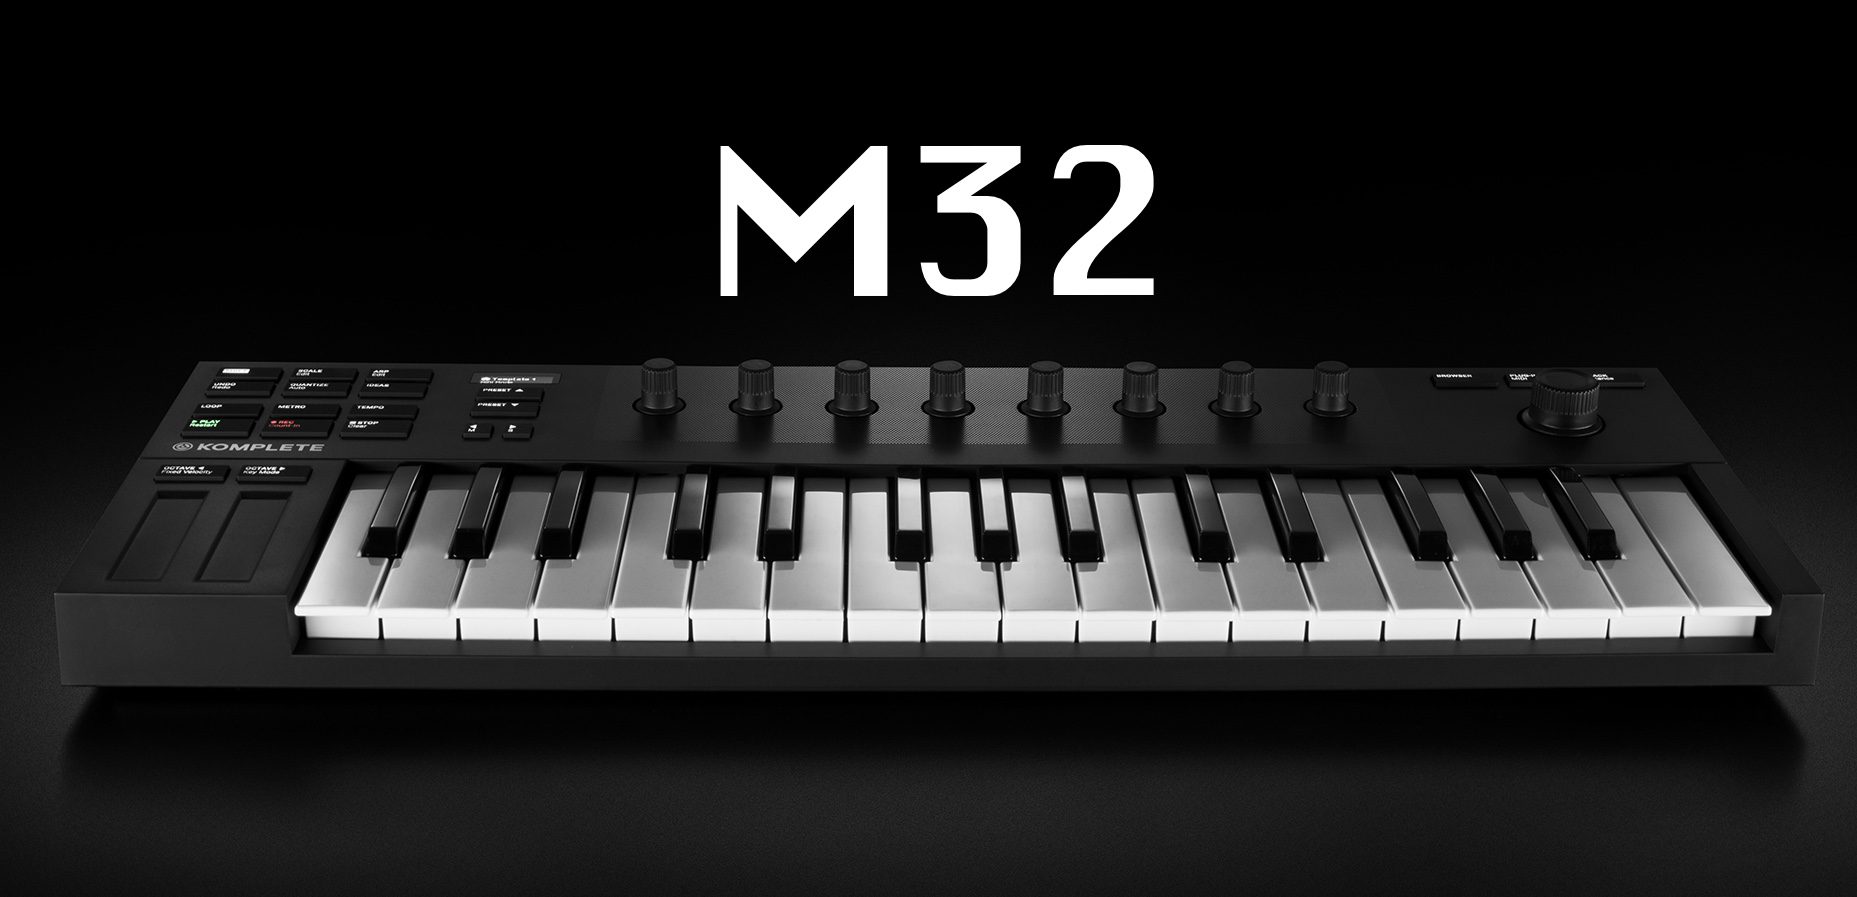 komplete kontrol m32 fl studio